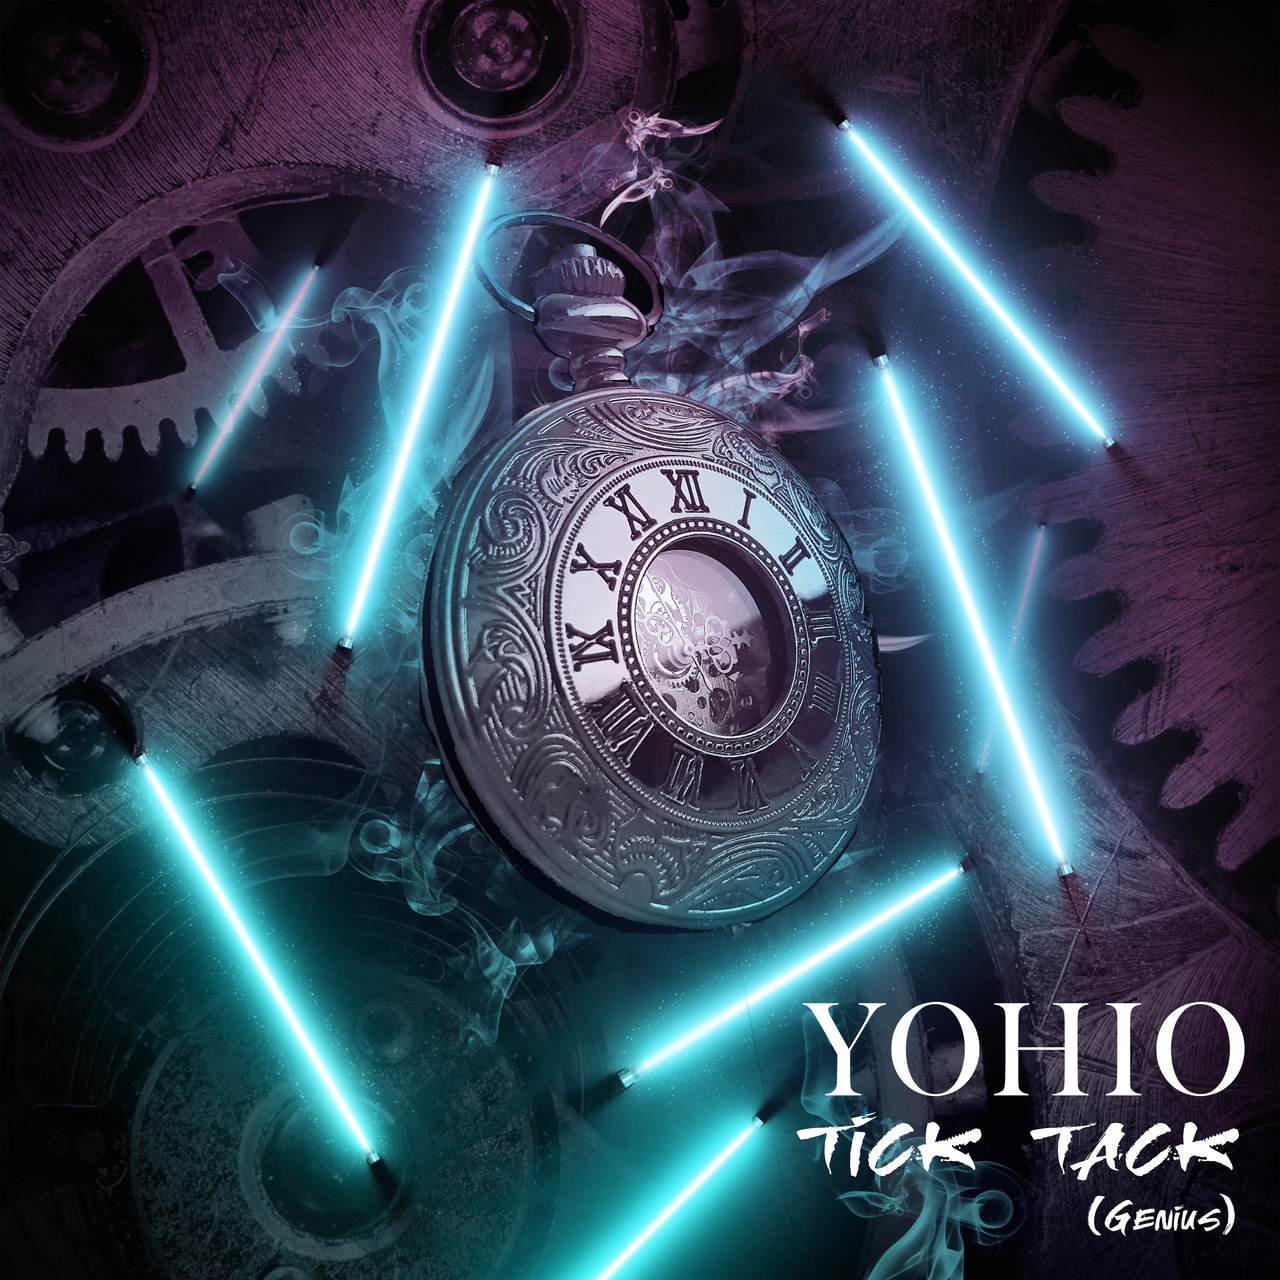 YOHIO Tick Tack (Genius) cover artwork